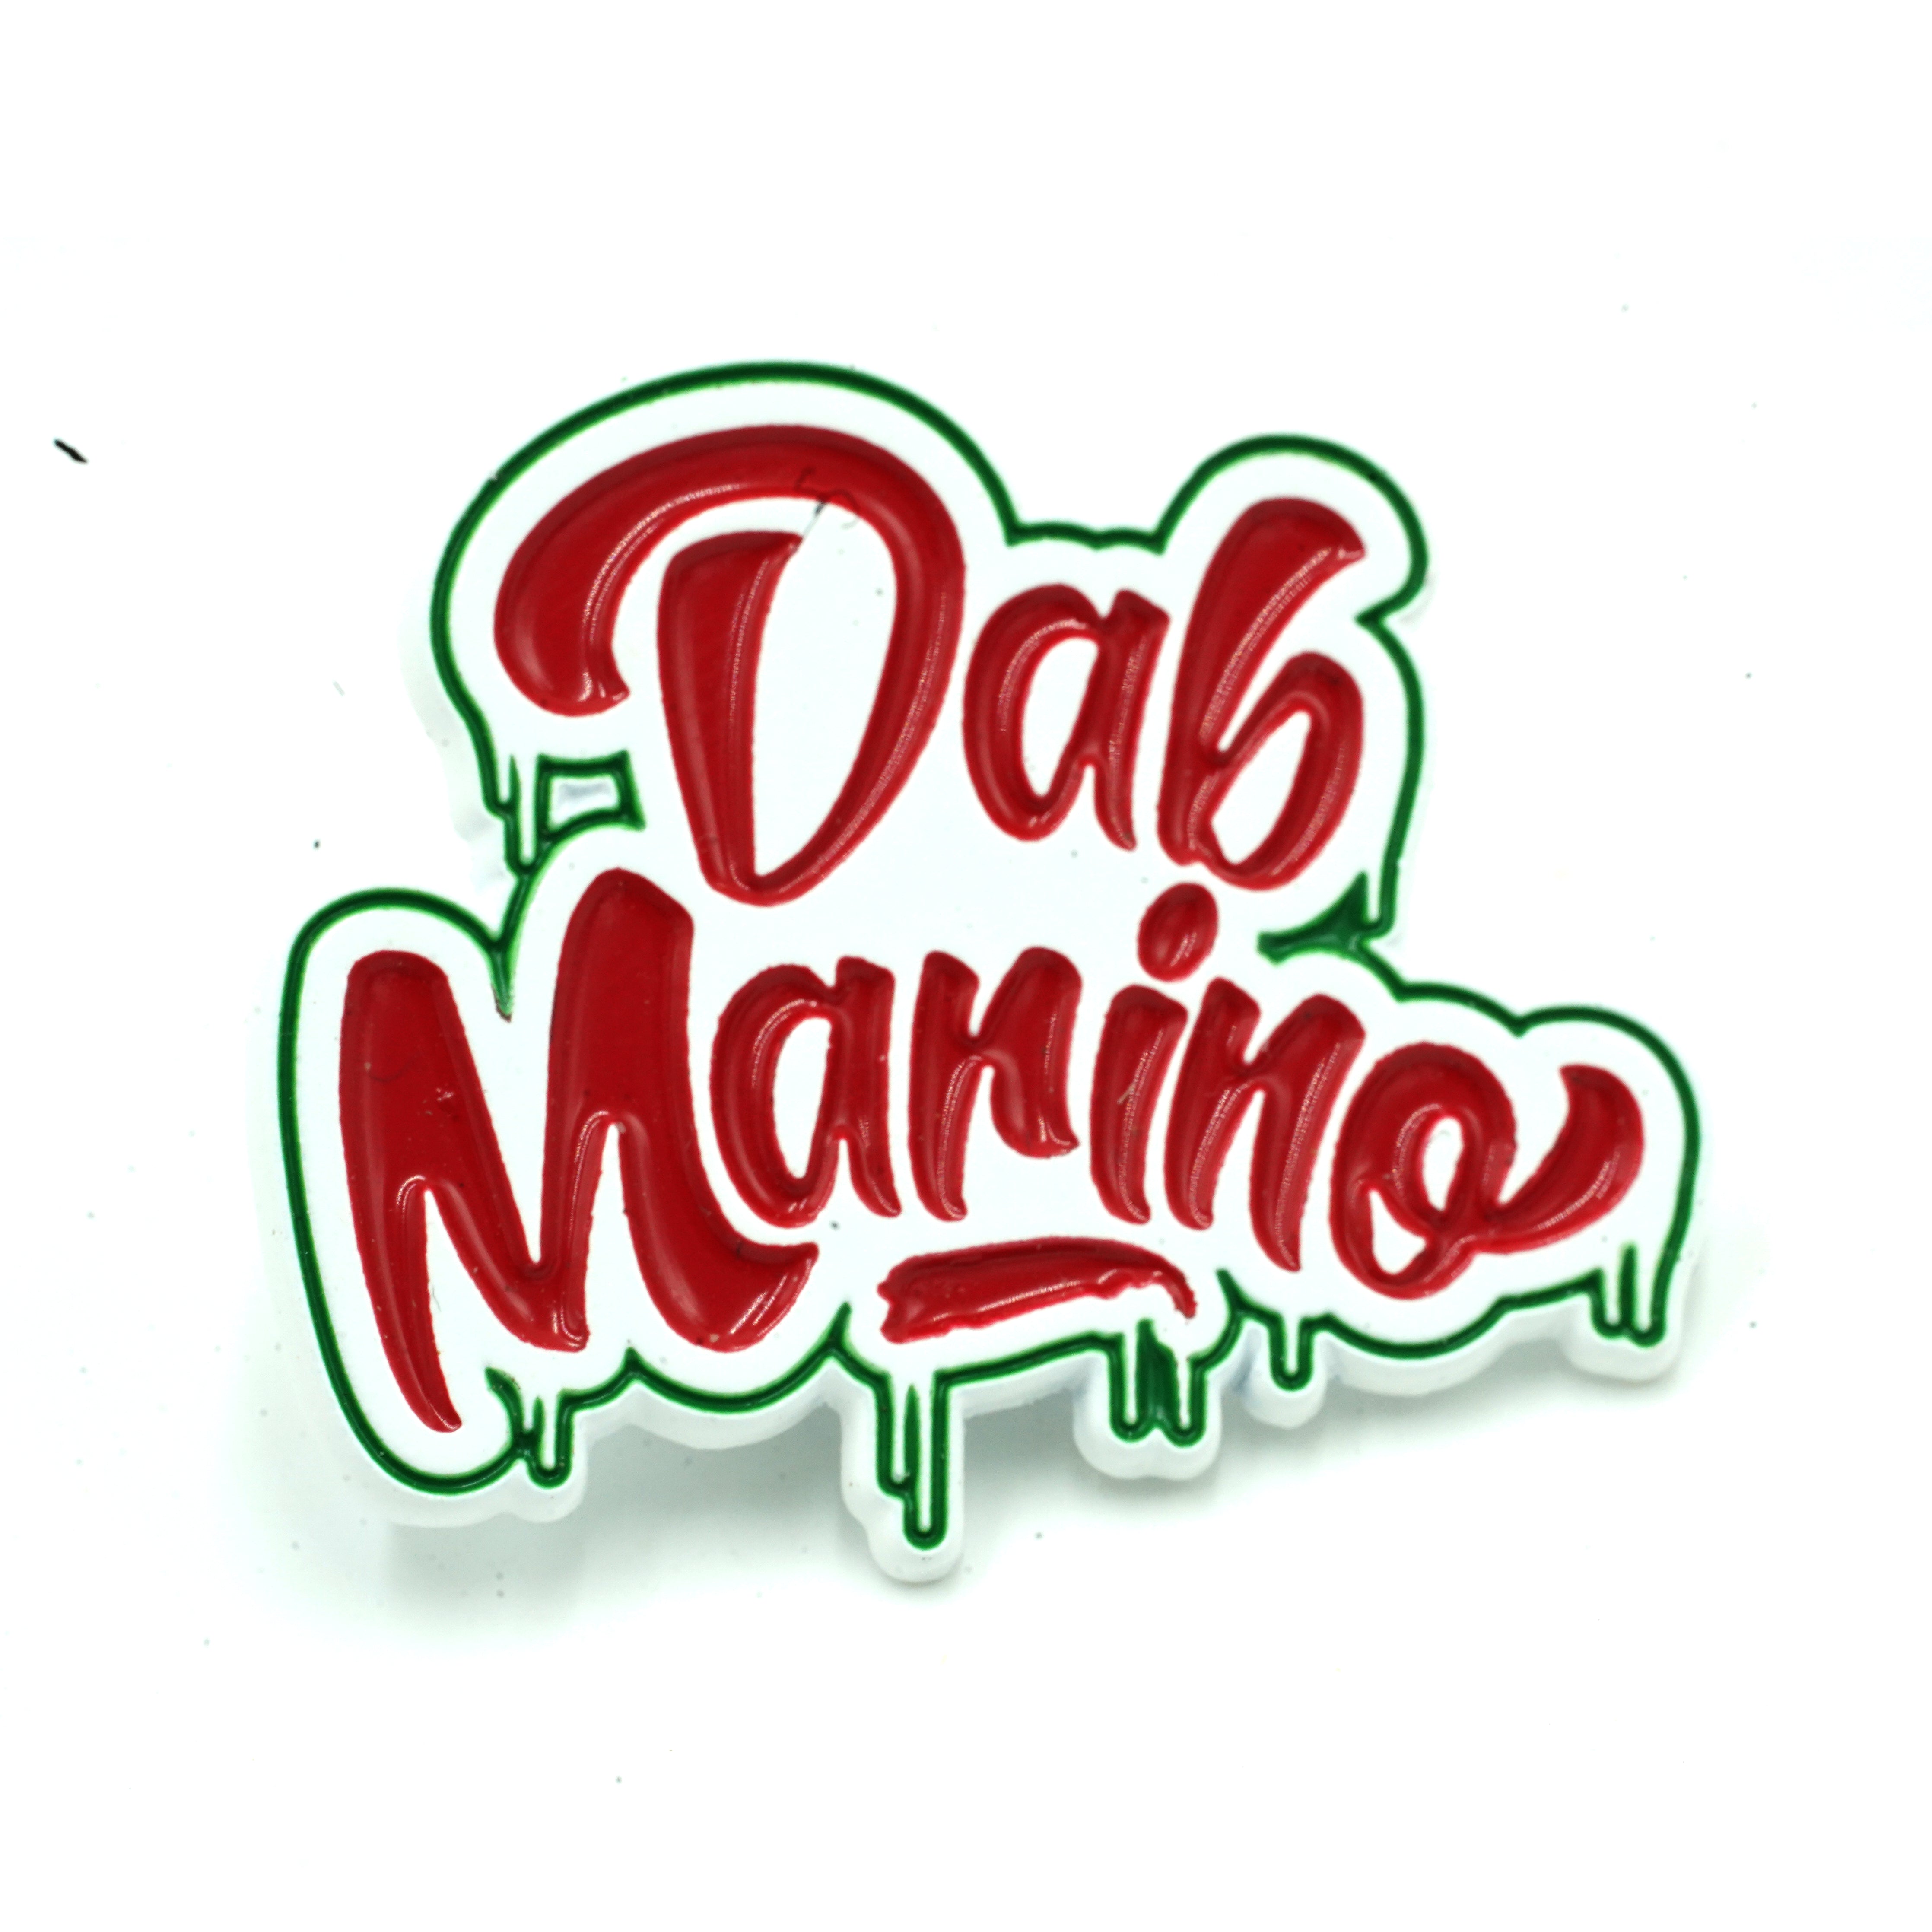 DAB MARINO - CLASSIC